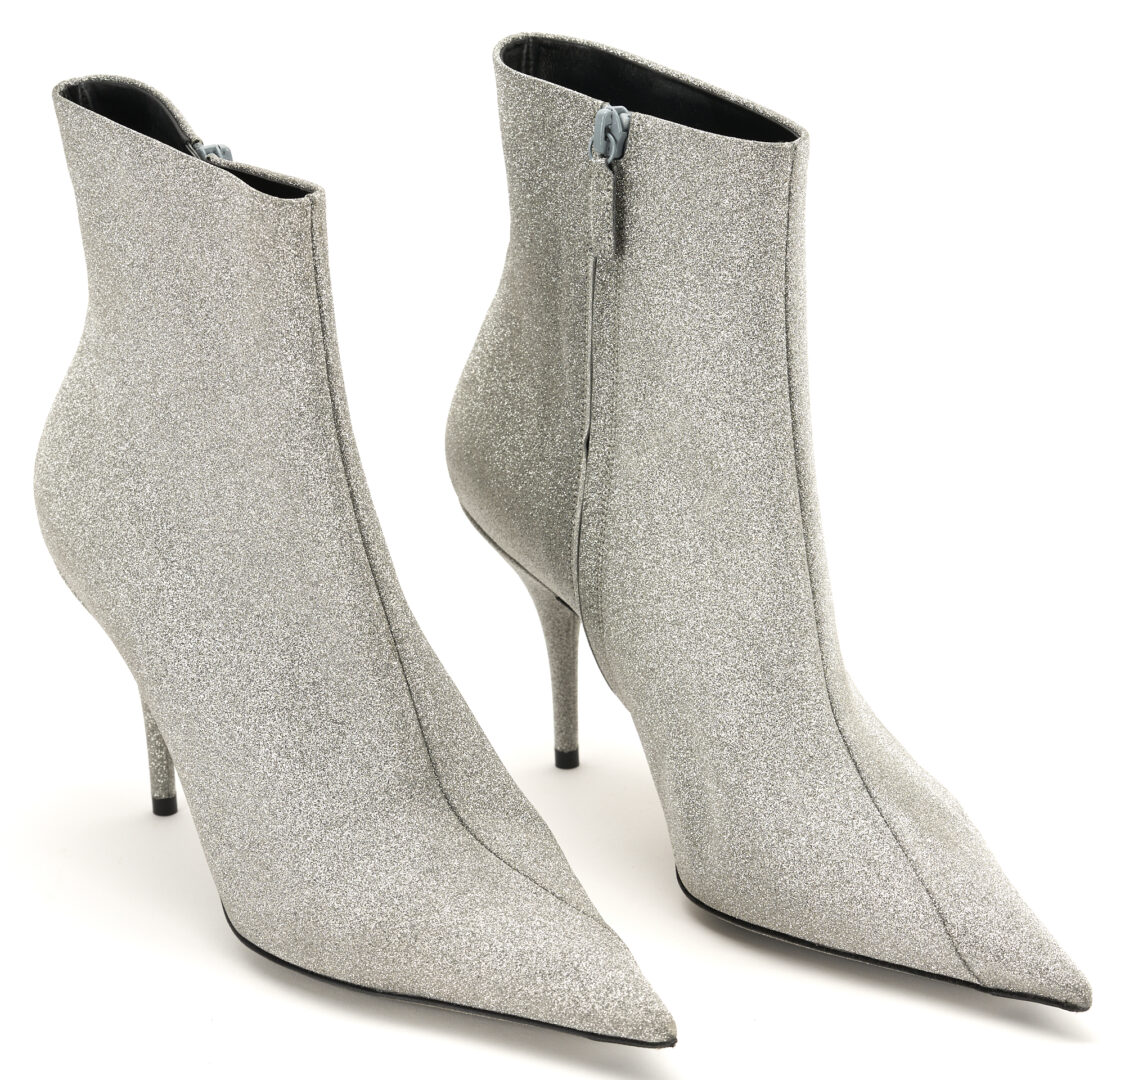 Lot 1254: 2 Prs. Designer Boots, incl. Knit Salvatore Ferragamo & Silver Glitter Balenciaga